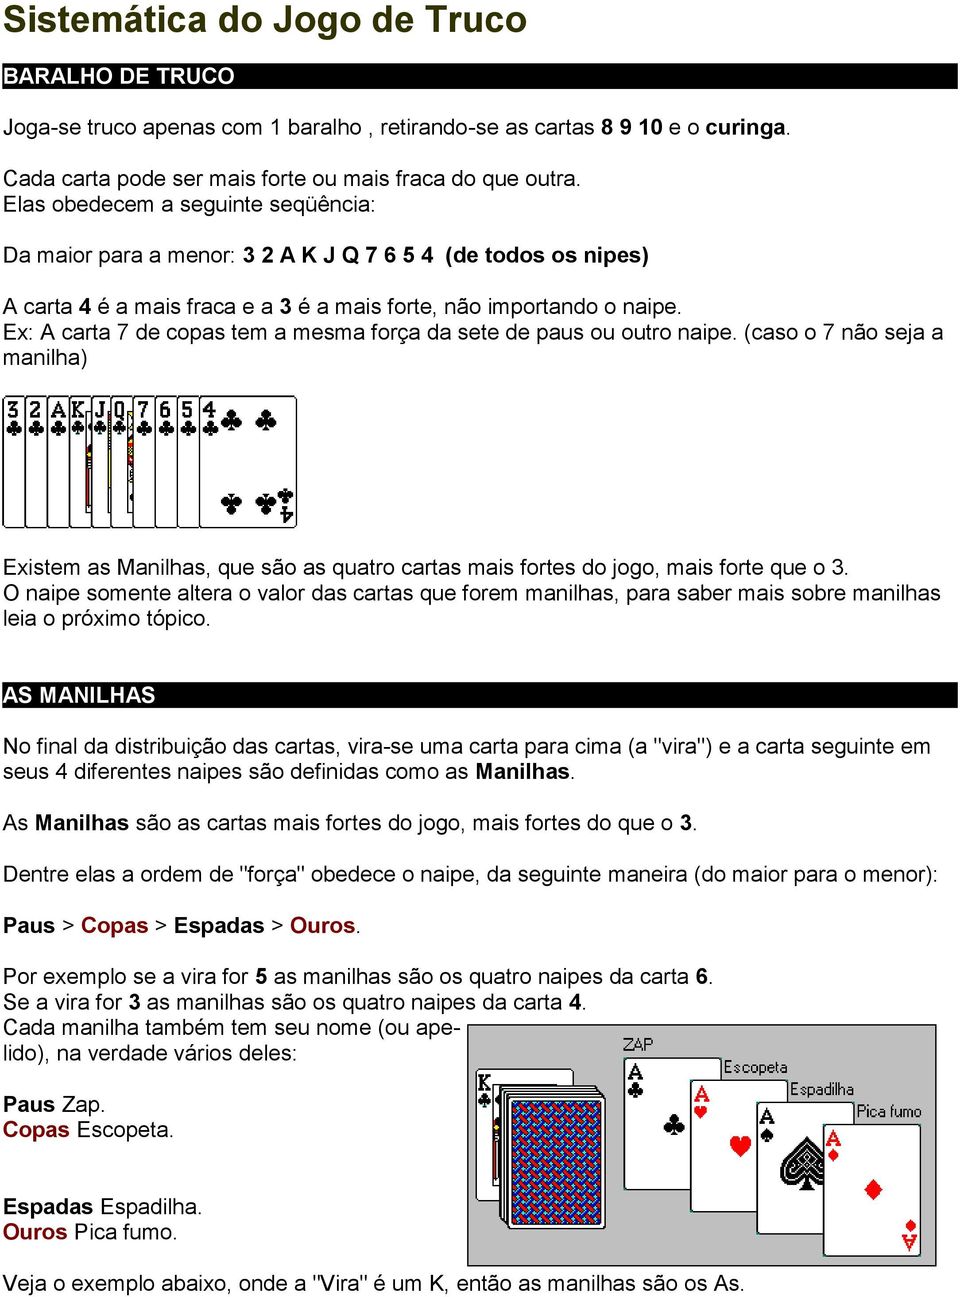 Silo - Tips - Regras Do Truco Paulista, PDF, Cartas de baralho